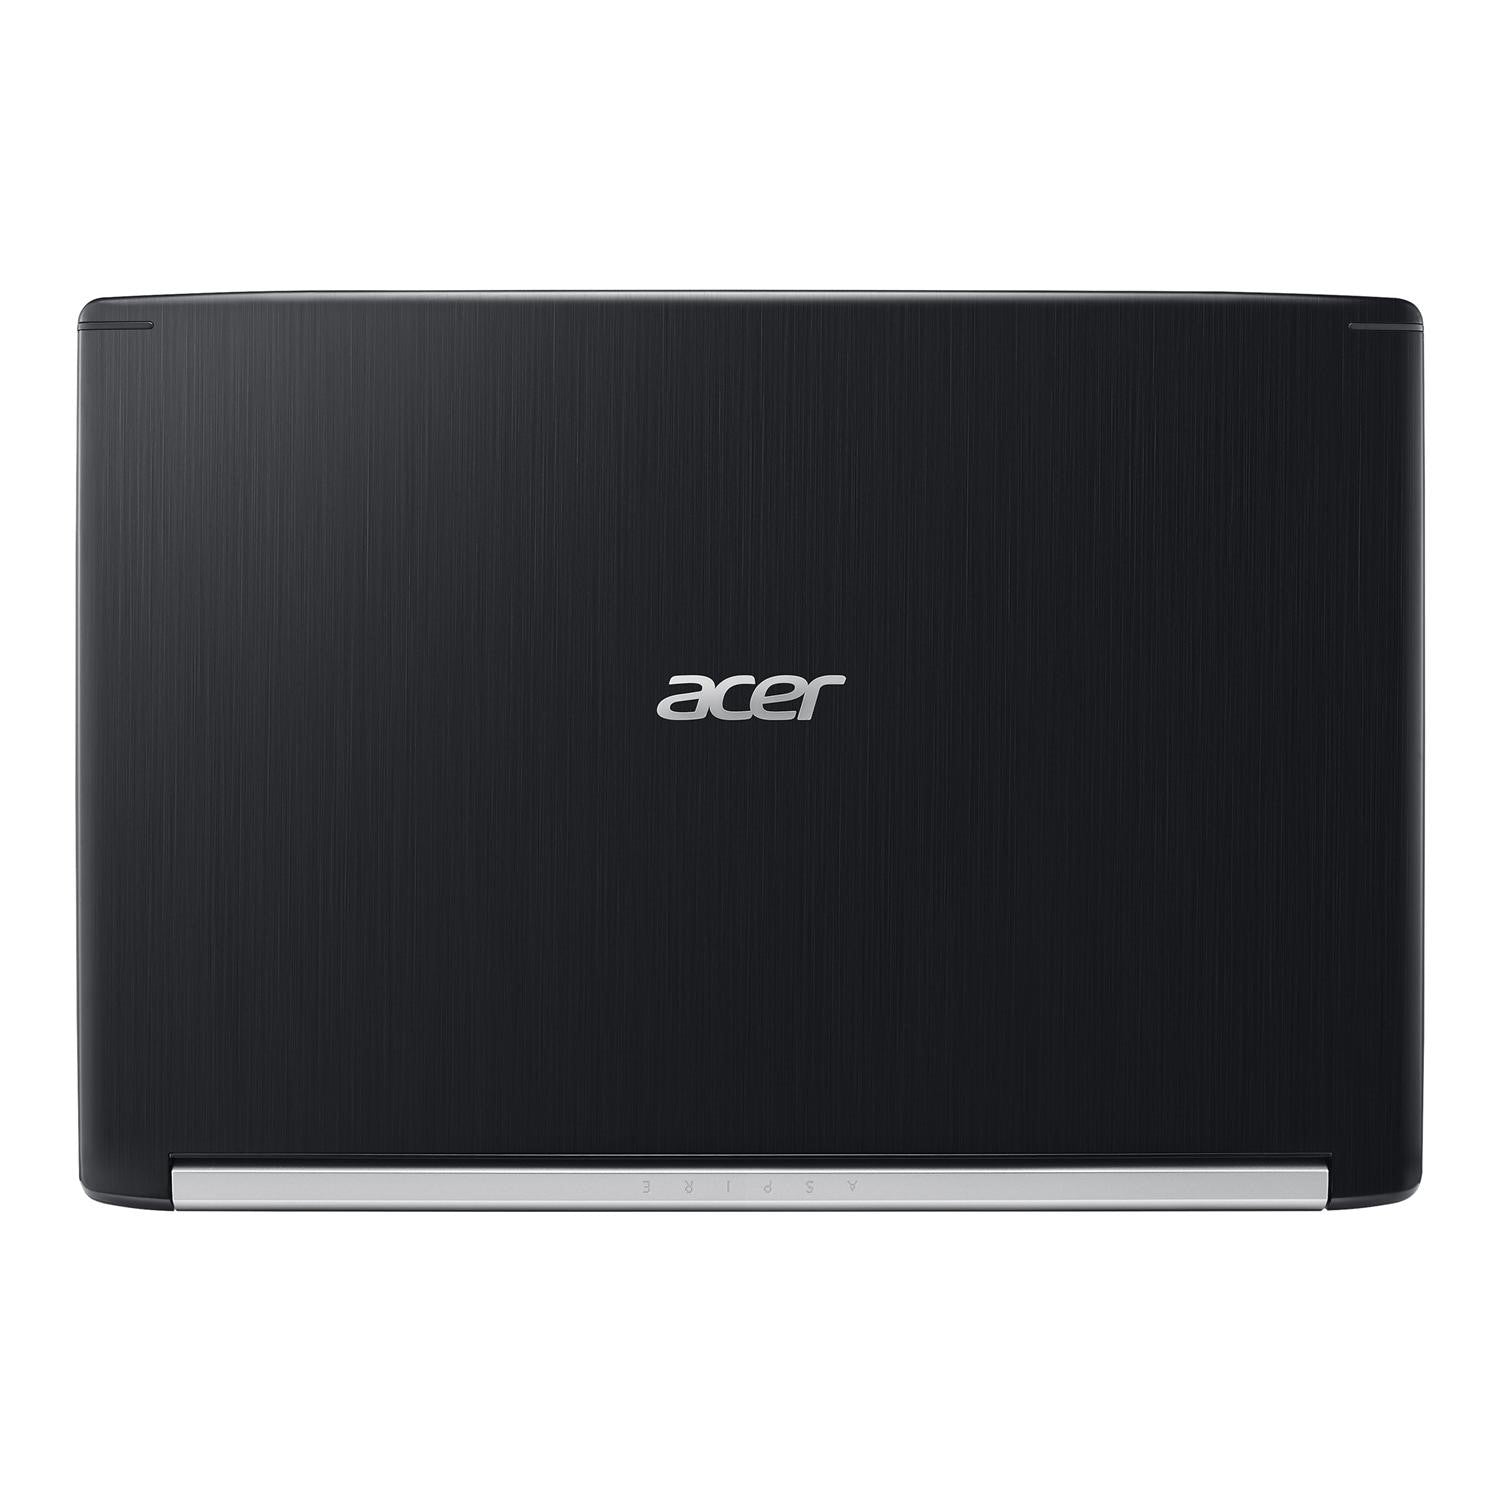 Acer Aspire 7 A715-72G-556J Intel Core i5-8300H 8GB RAM 1TB HDD 15.6" - Black